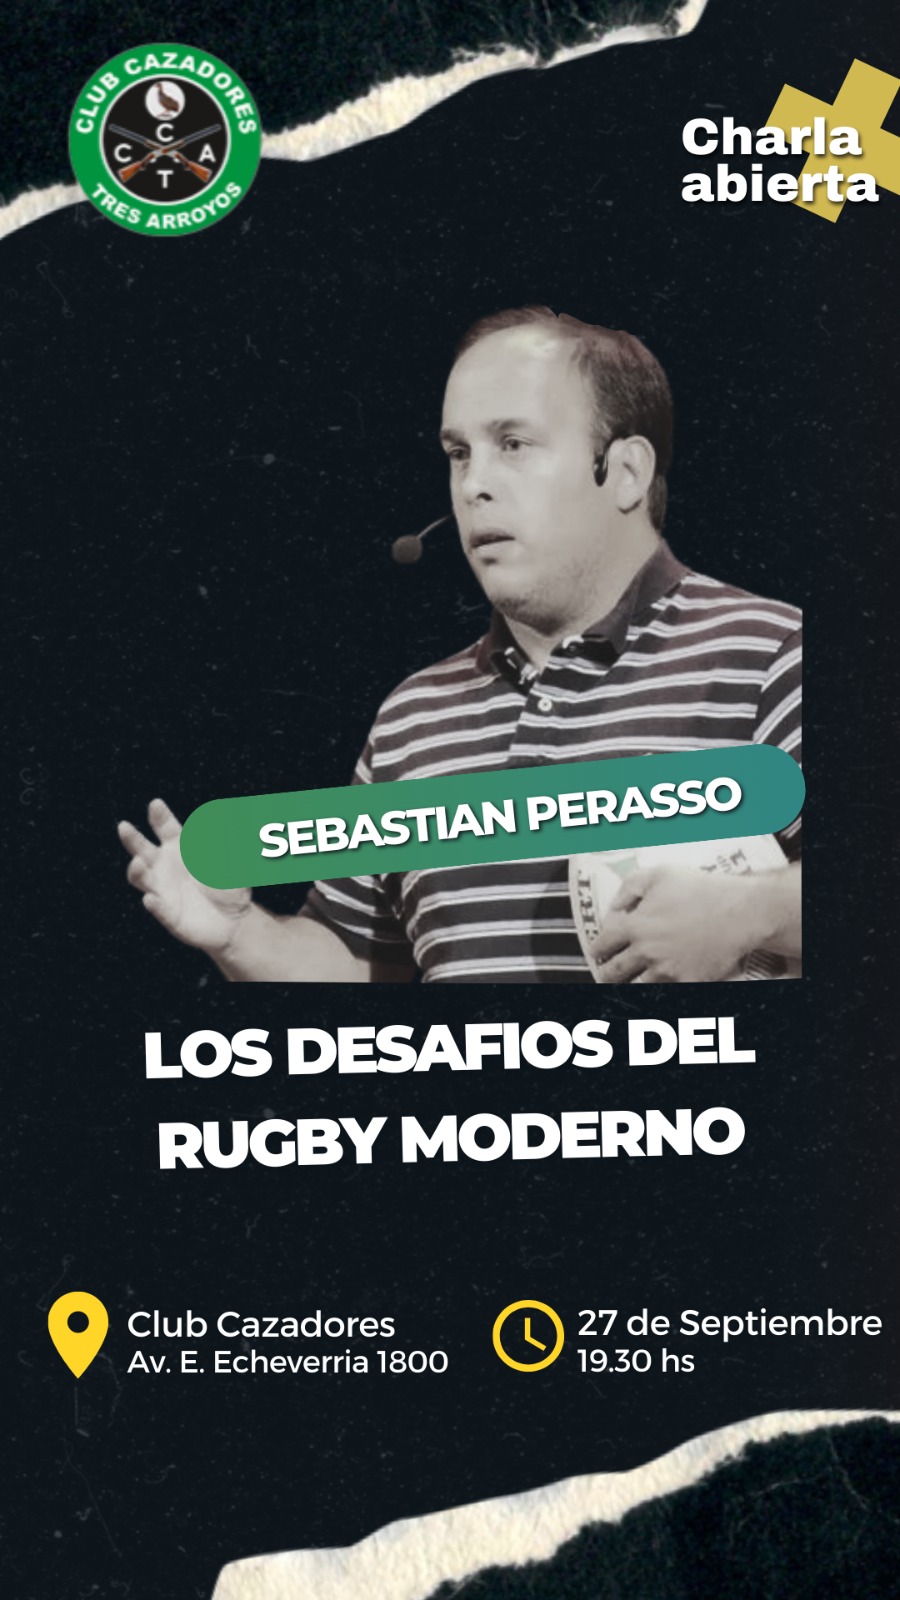 Rugby: Sebastián Perasso dará una charla en Cazadores